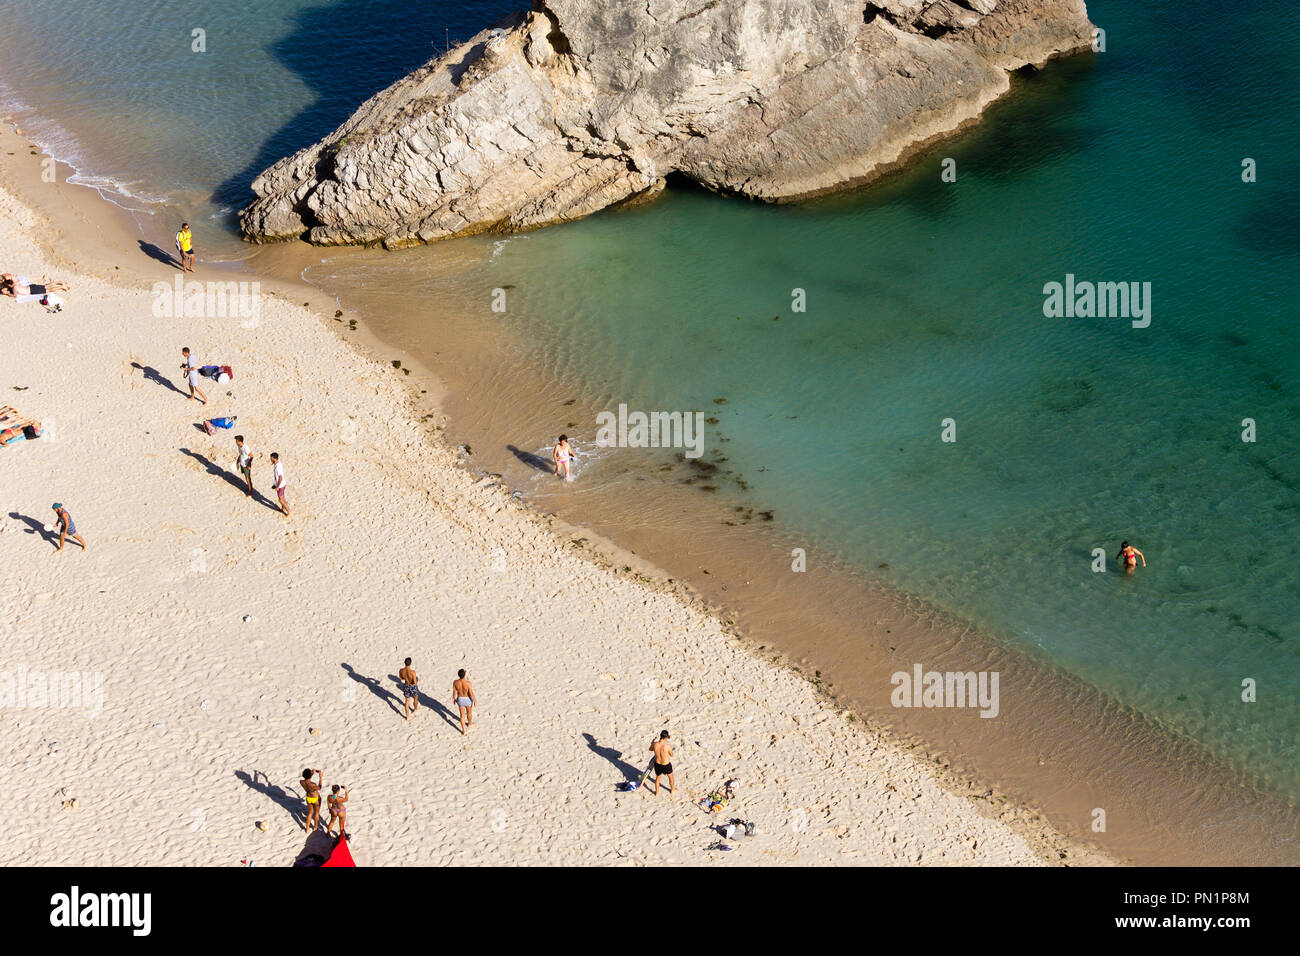 Ein top - Ansicht von mehreren Personen am Strand mit einem großen Felsen im Meer. Stockfoto